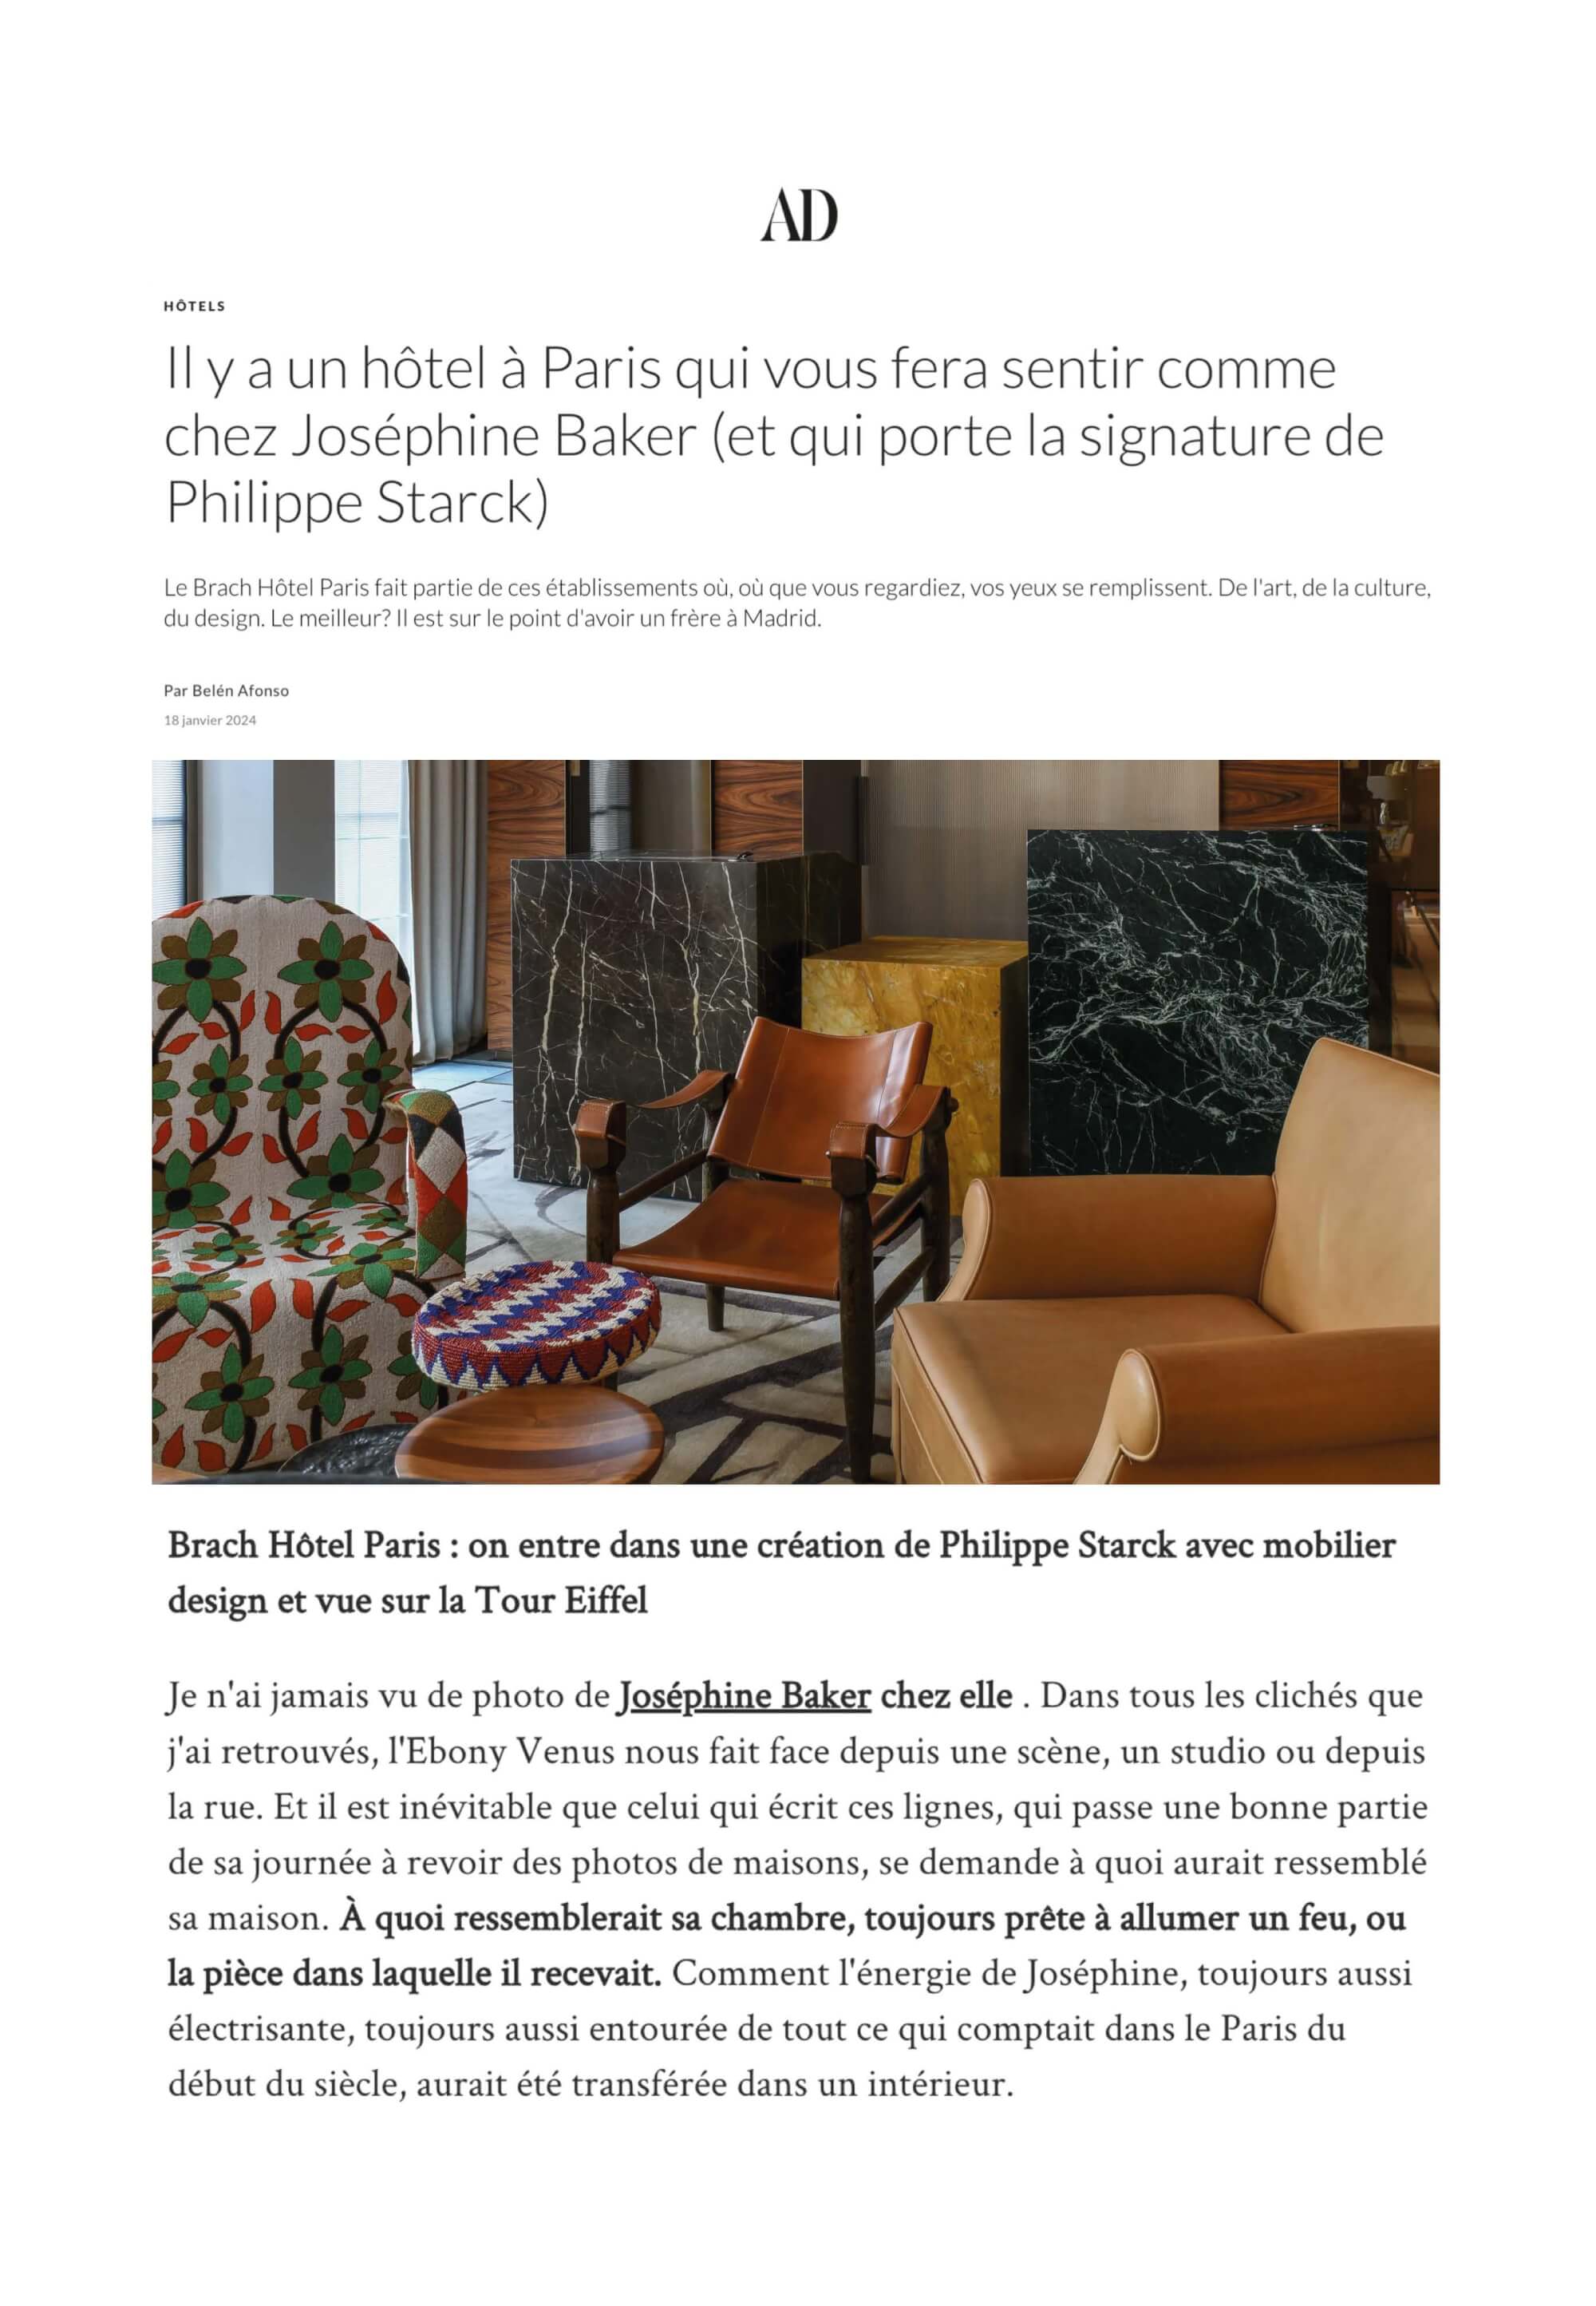 Il y a un hôtel à Paris qui vous fera sentir chez Josephine Baker (et porte la signature de Philippe Starck